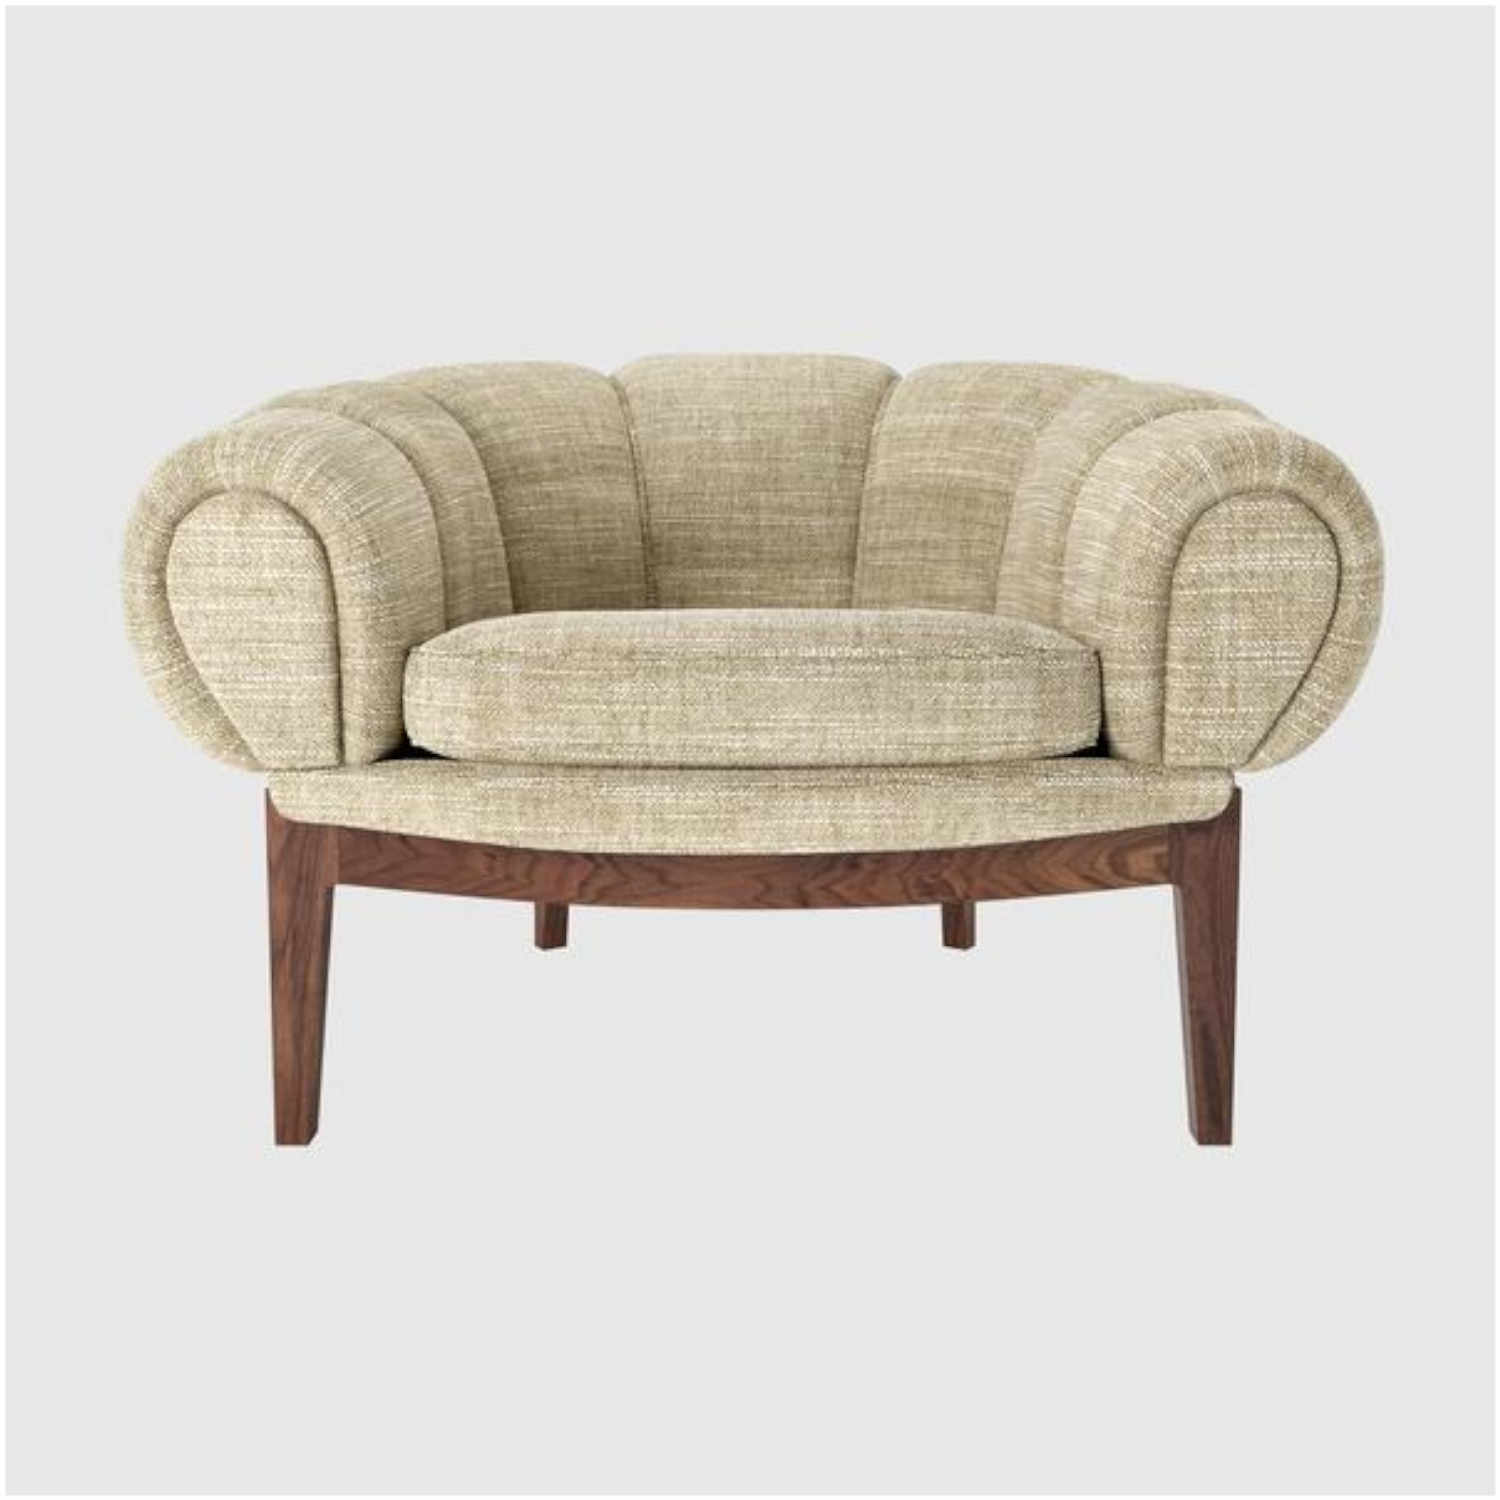 Croissant Lounge Chair, Bezug dedar smilla avorio stoff, Untergestell Wood Base solid american walnut (geölt) von GUBI